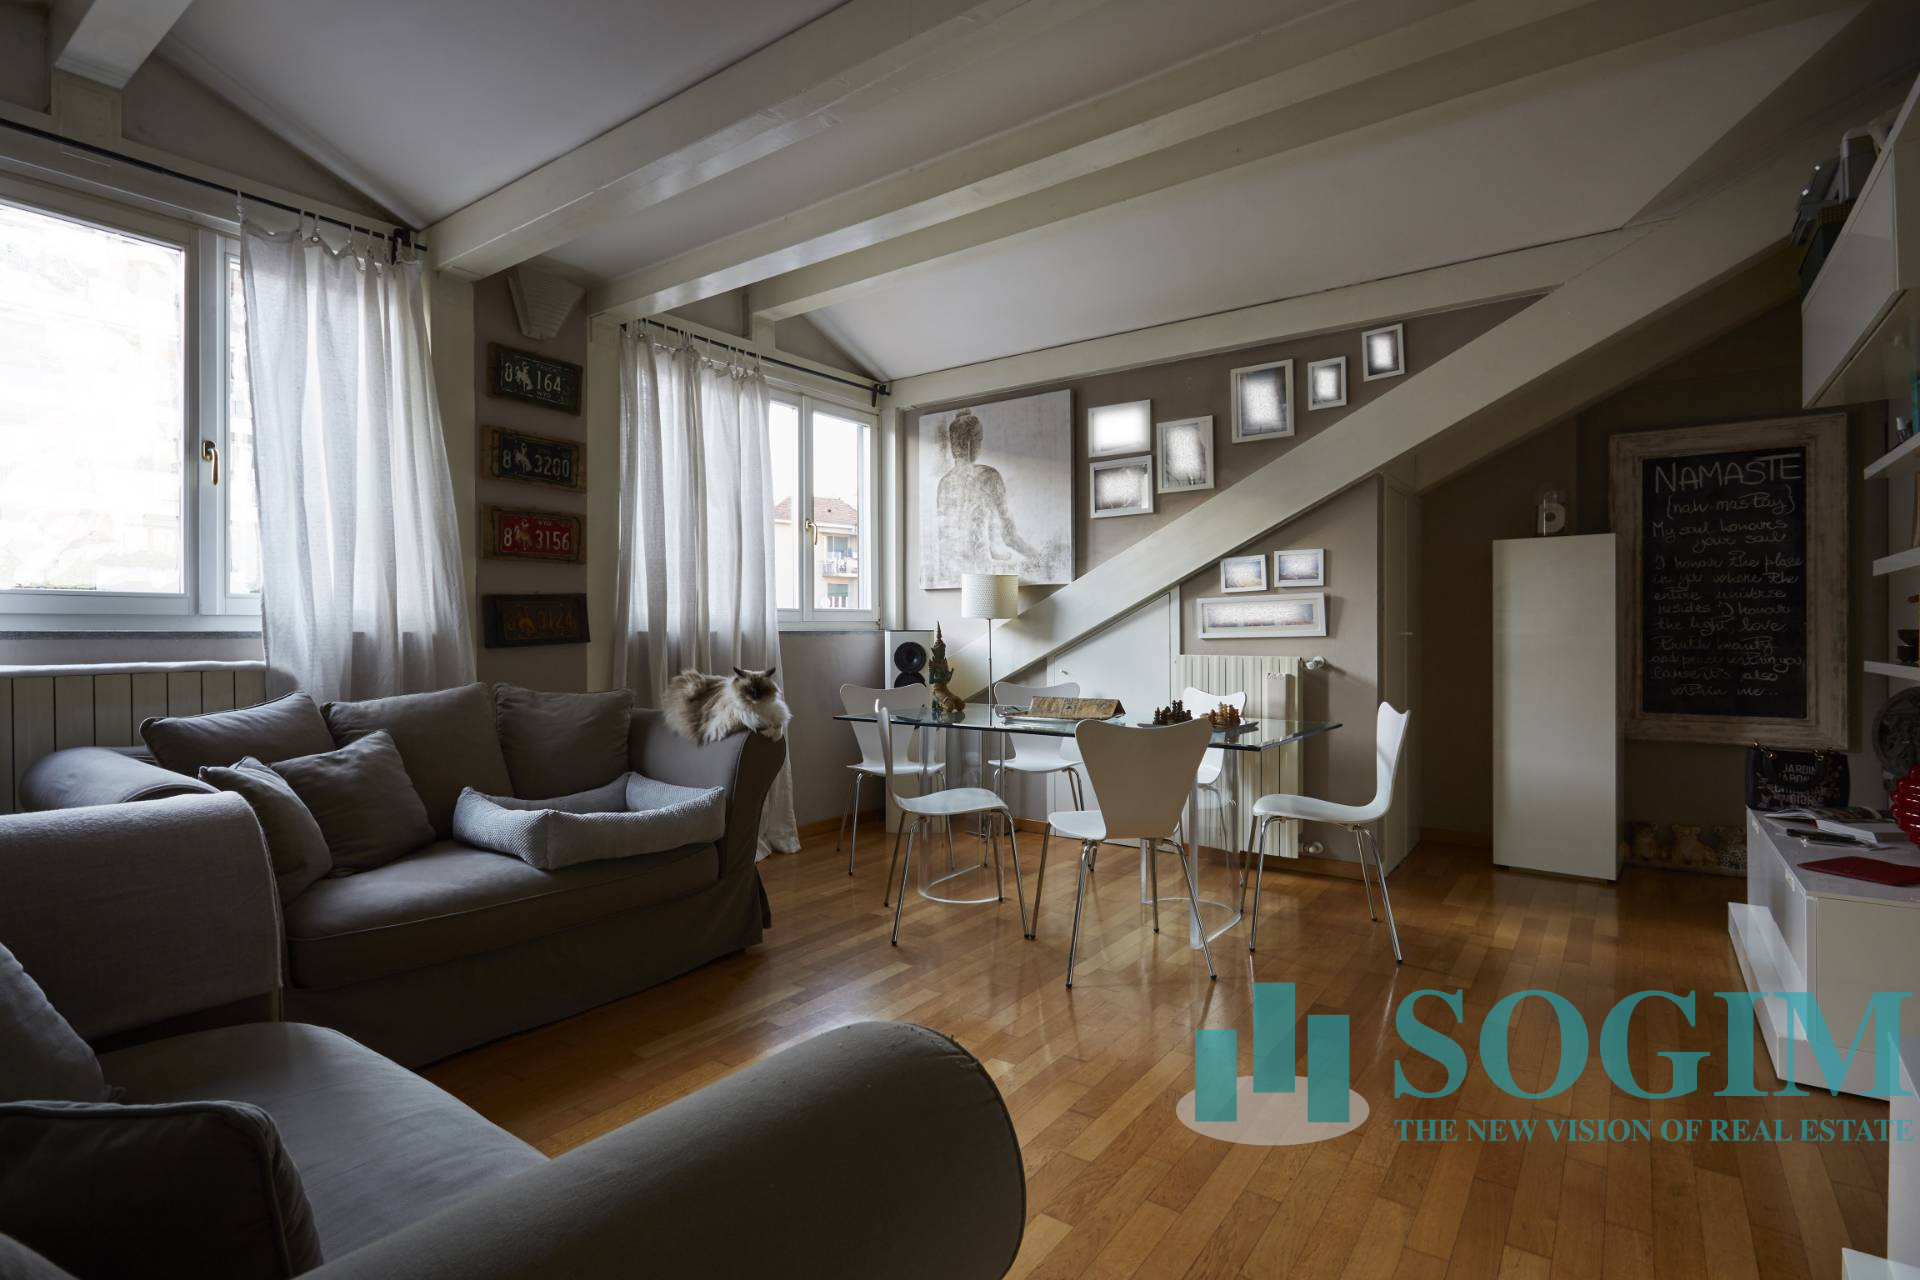 Vendita Case E Appartamenti A Milano E Provincia Sogim Immobiliare